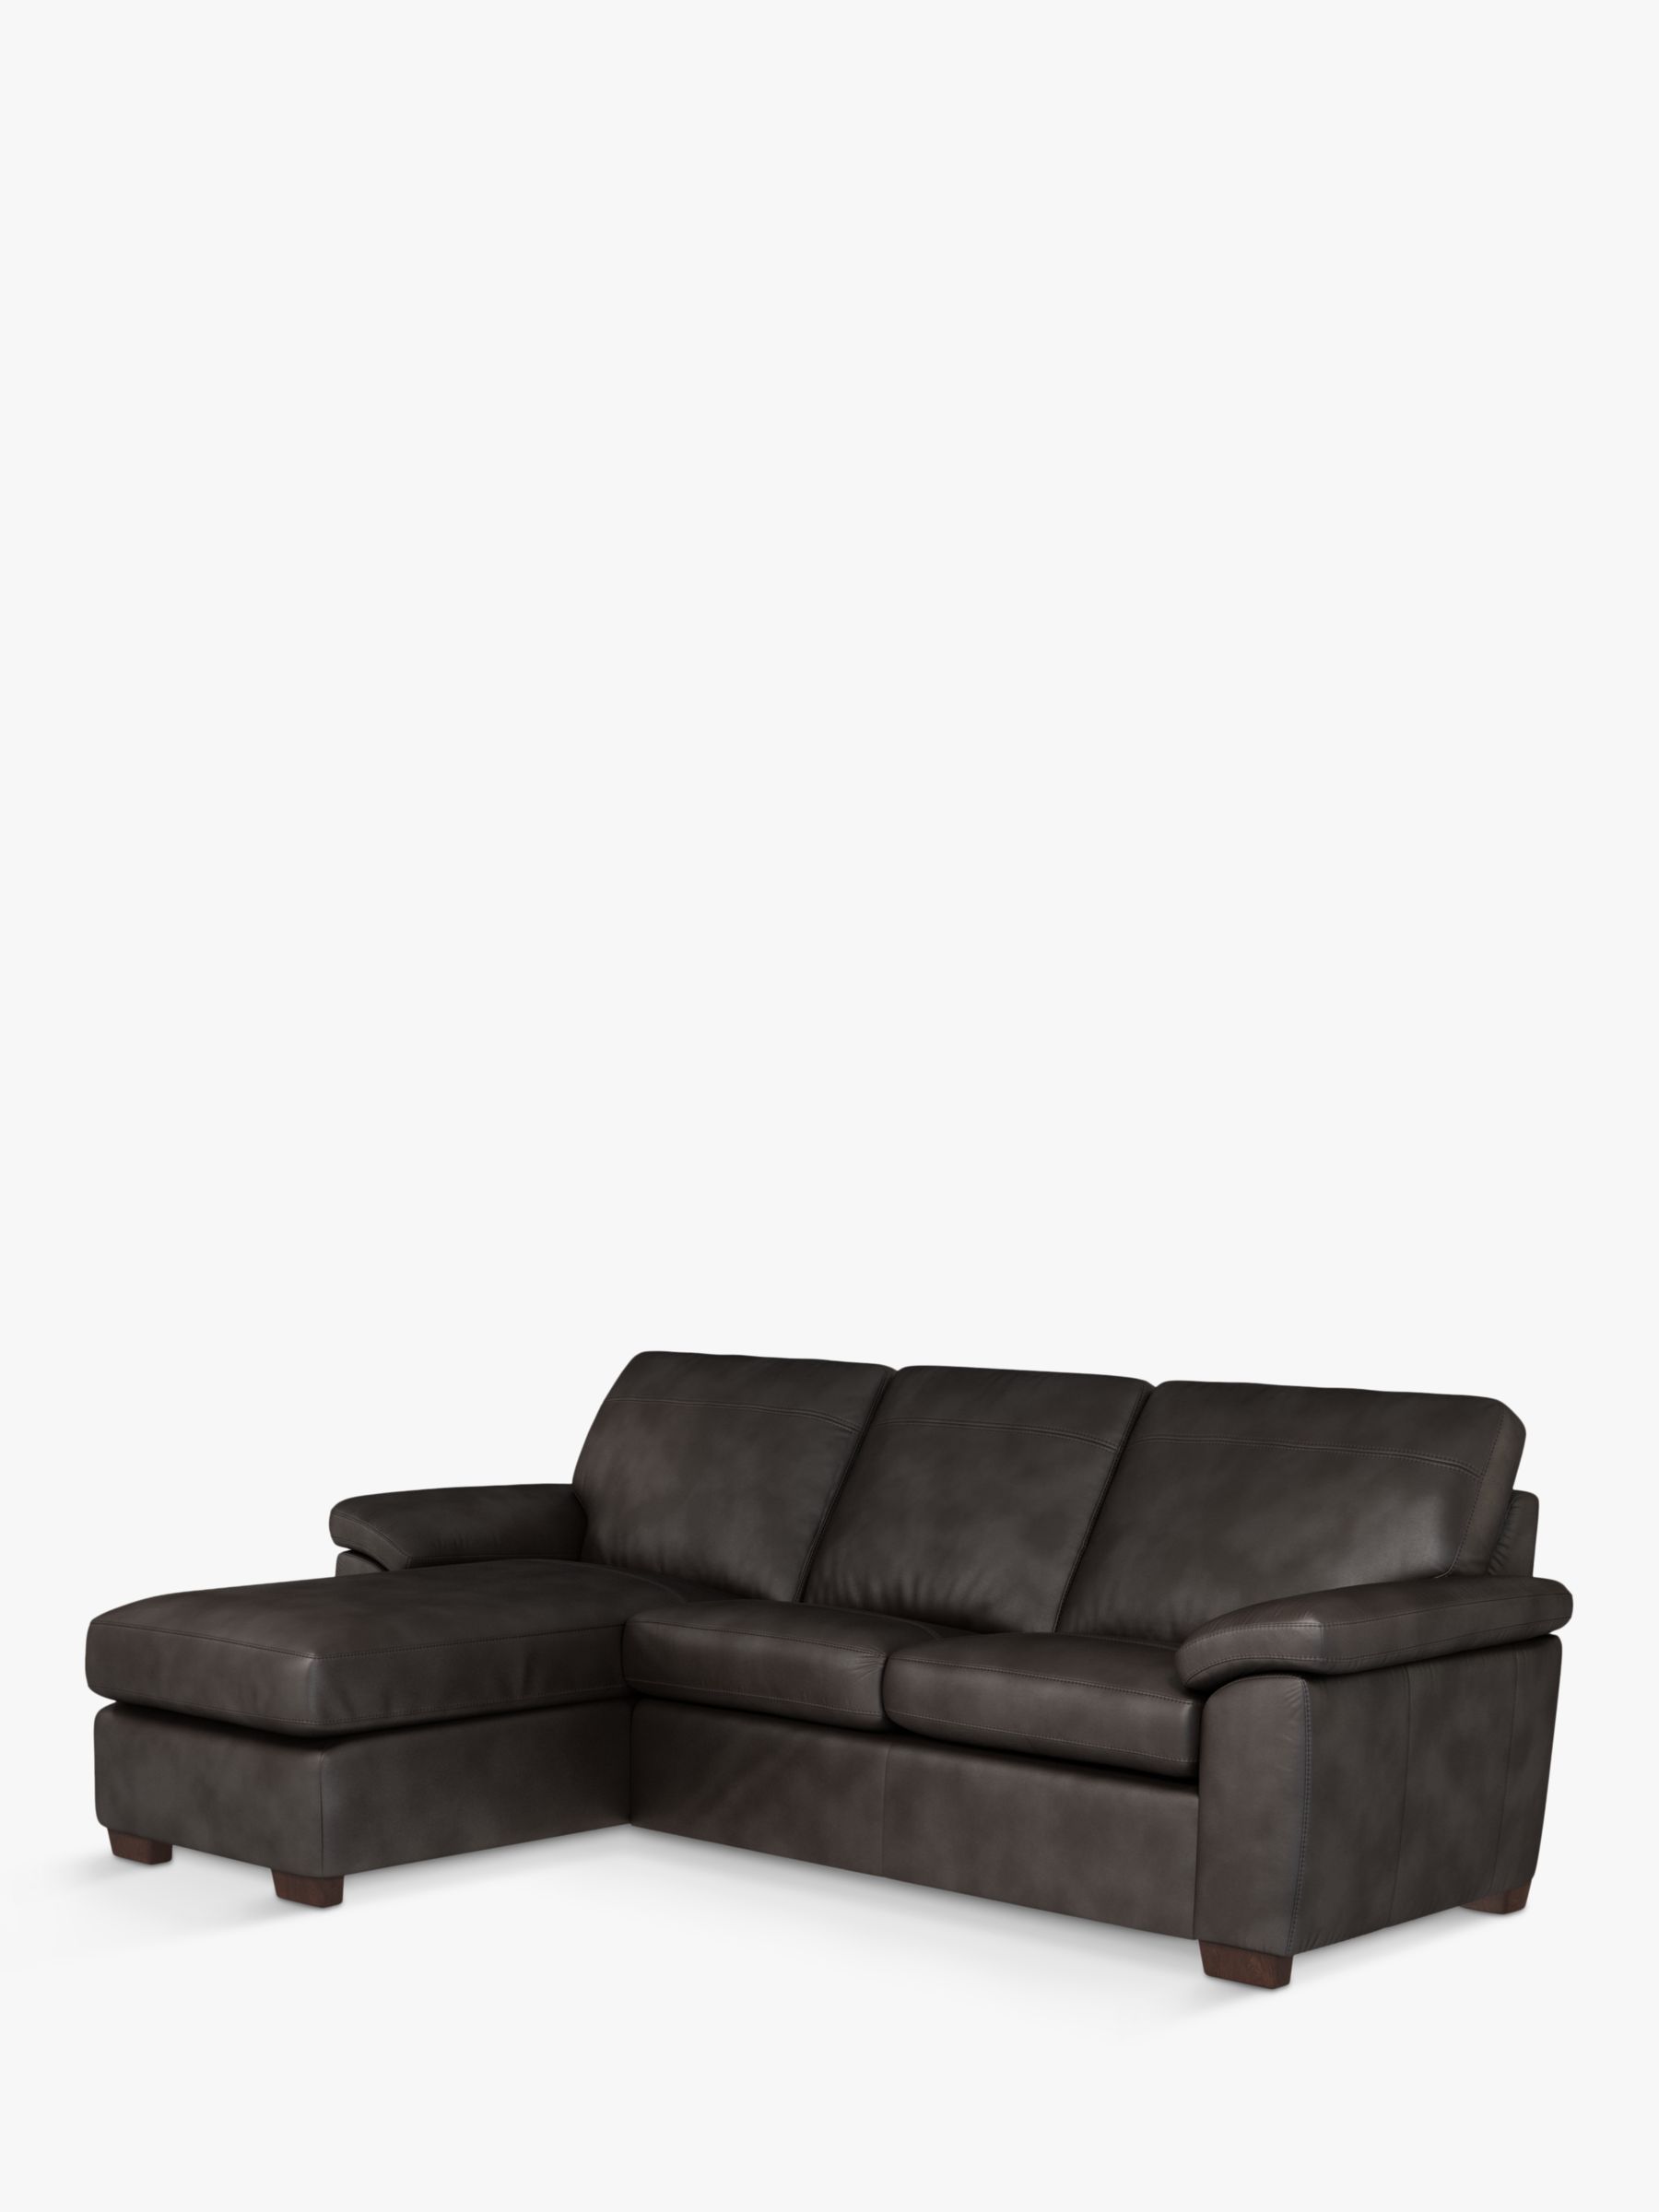 Camden Range, John Lewis Camden LHF Storage Chaise End Leather Sofa Bed, Dark Leg, Contempo Dark Chocolate